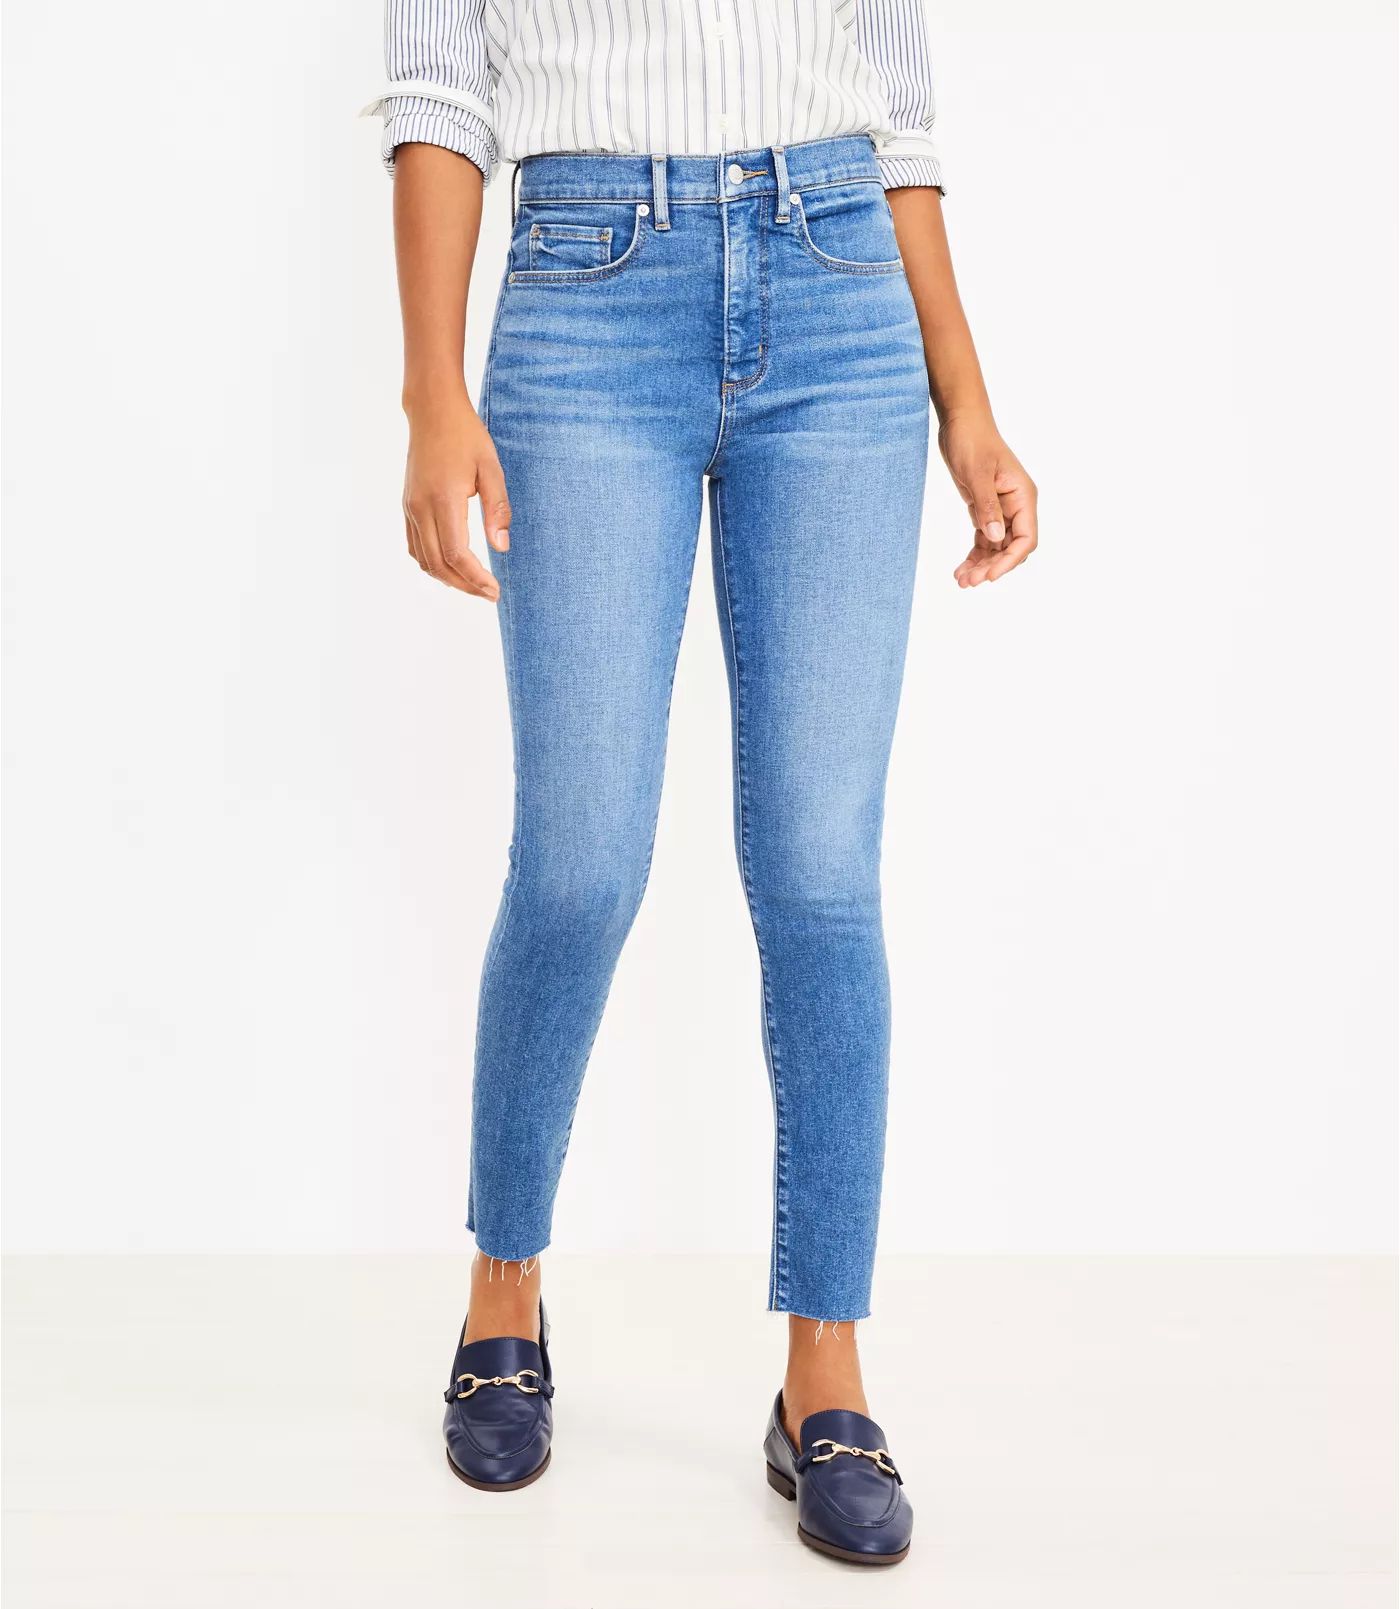 Fresh Cut High Rise Skinny Jeans in Mid Indigo Wash | LOFT